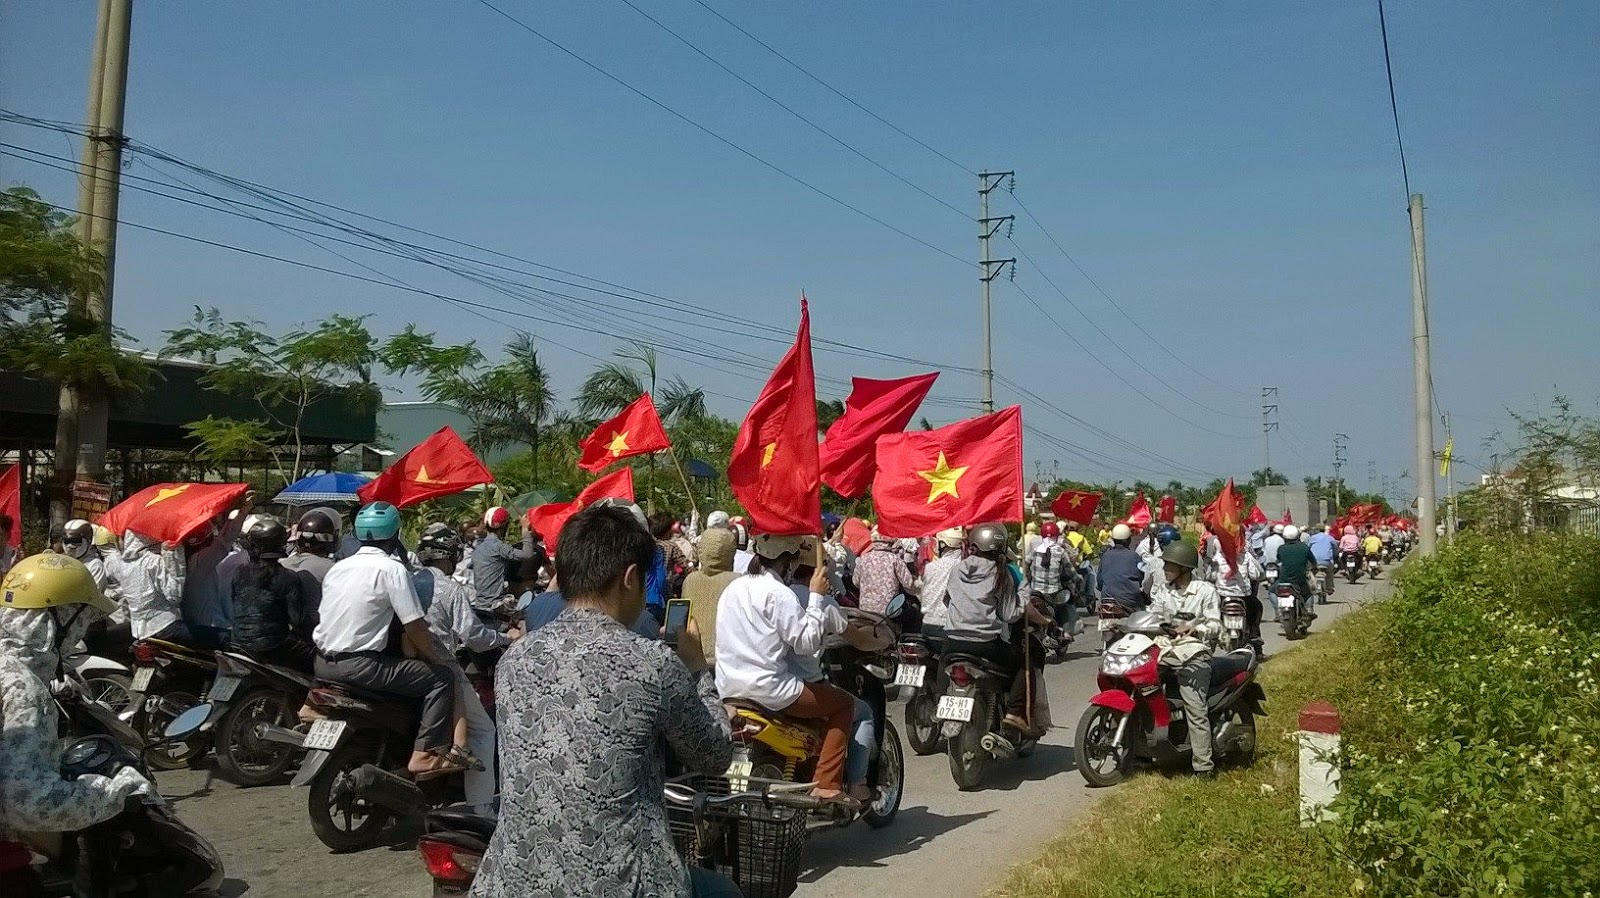 quốc - Đình công chống Trung Quốc lan rộng trên quy mô cả nước Haiphong1